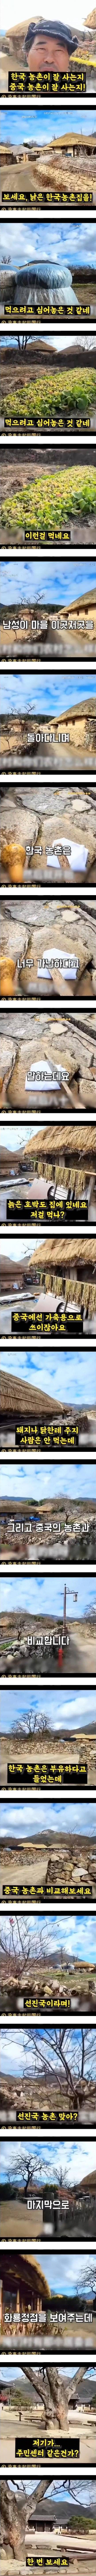 한국 농촌의 실상이라며 중국에 올라온 영상